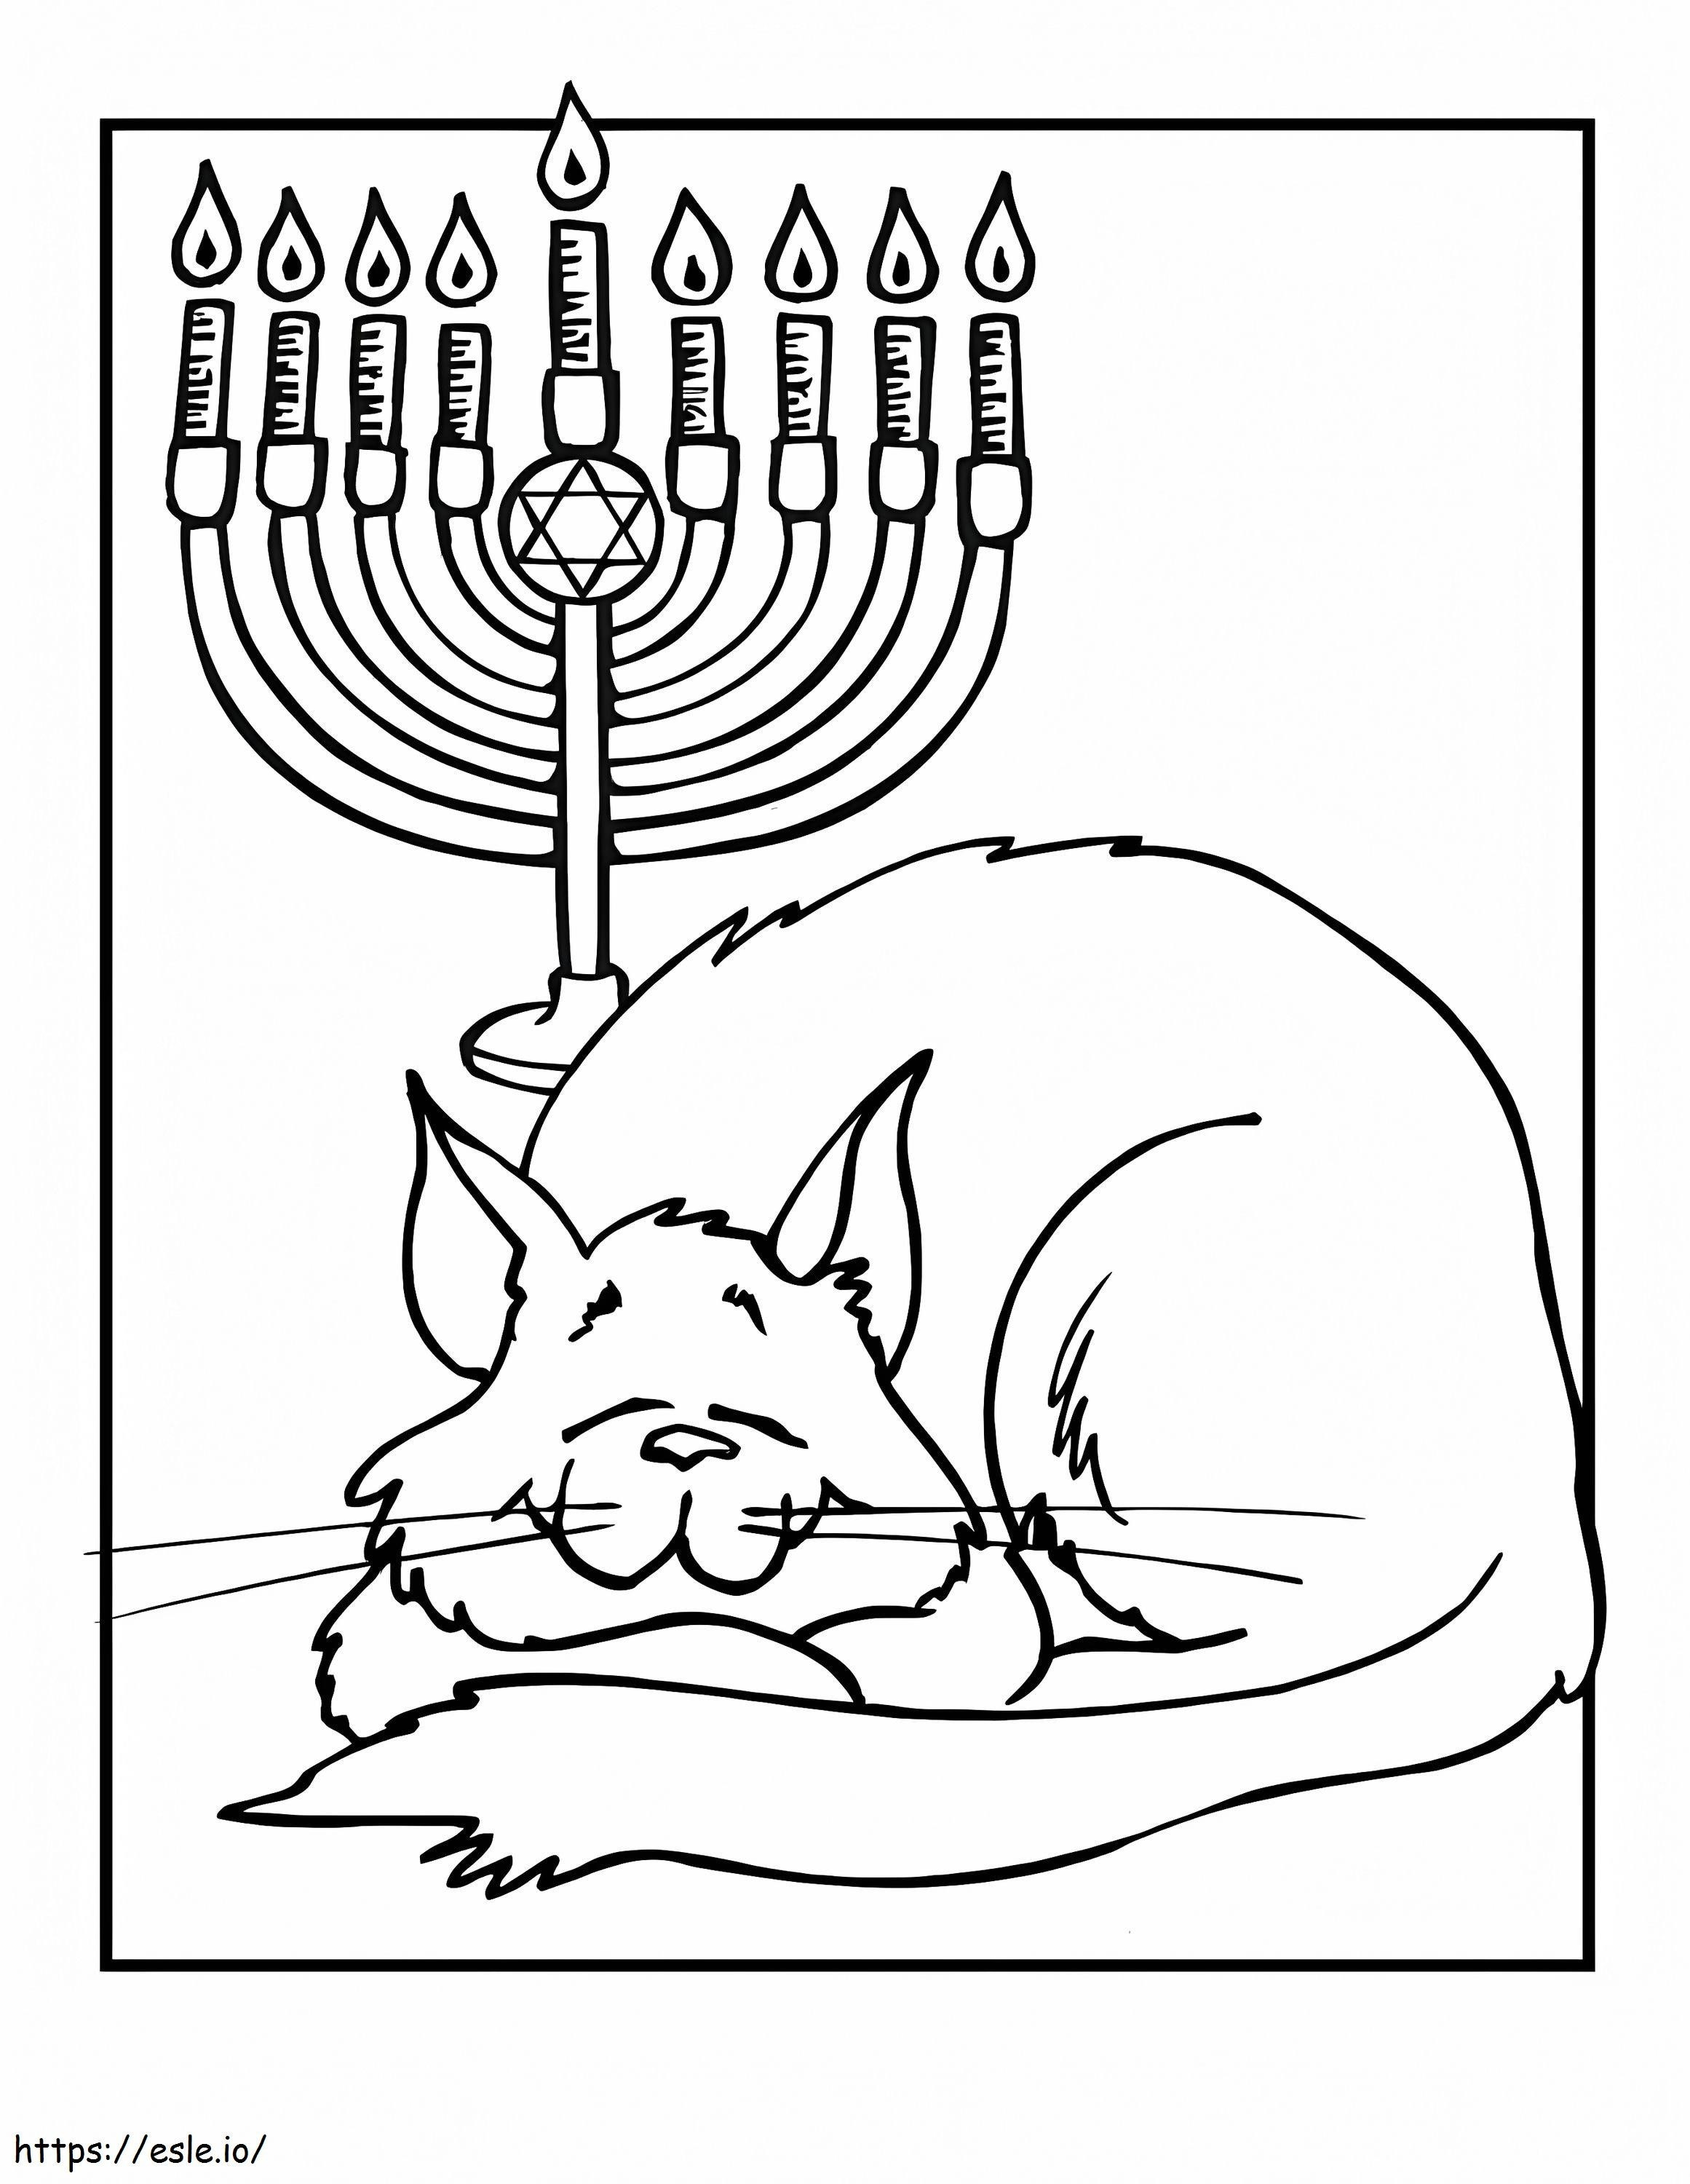 Cat With Hanukkah Menorah coloring page